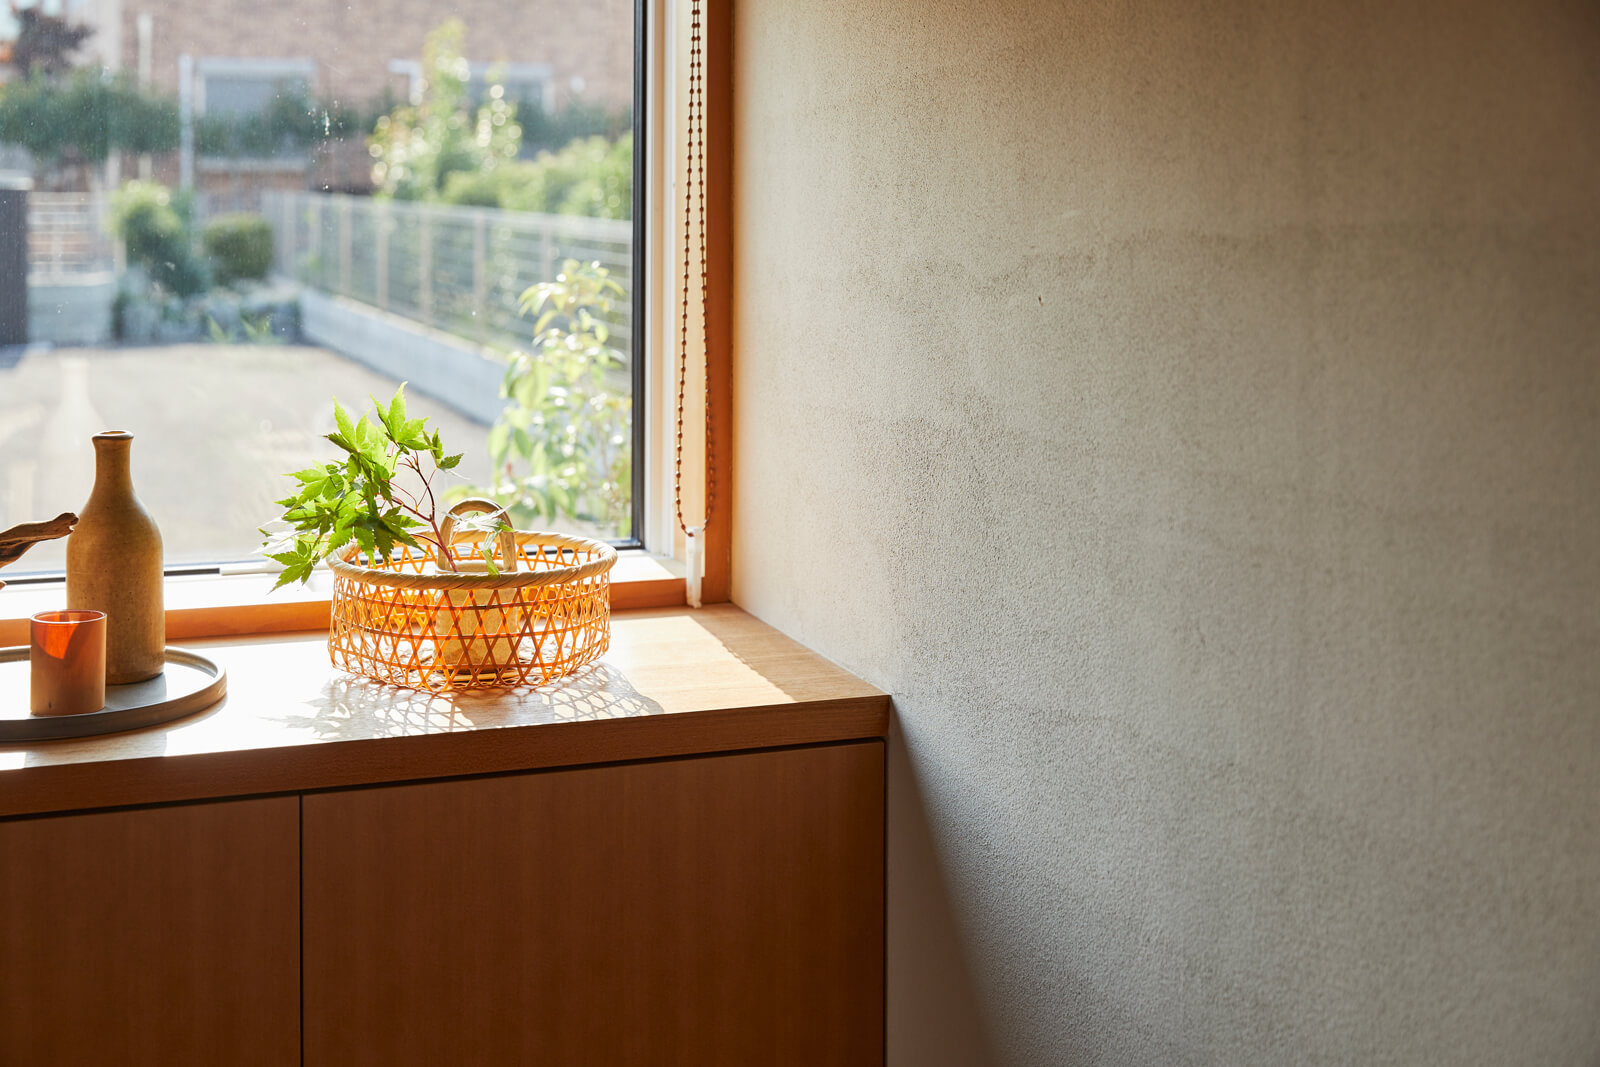 壁には珪藻土に光触媒チタンアパタイトを配合した塗り壁材、フラッシュクリーンを施工。調湿効果や有害物質吸着効果が期待できる